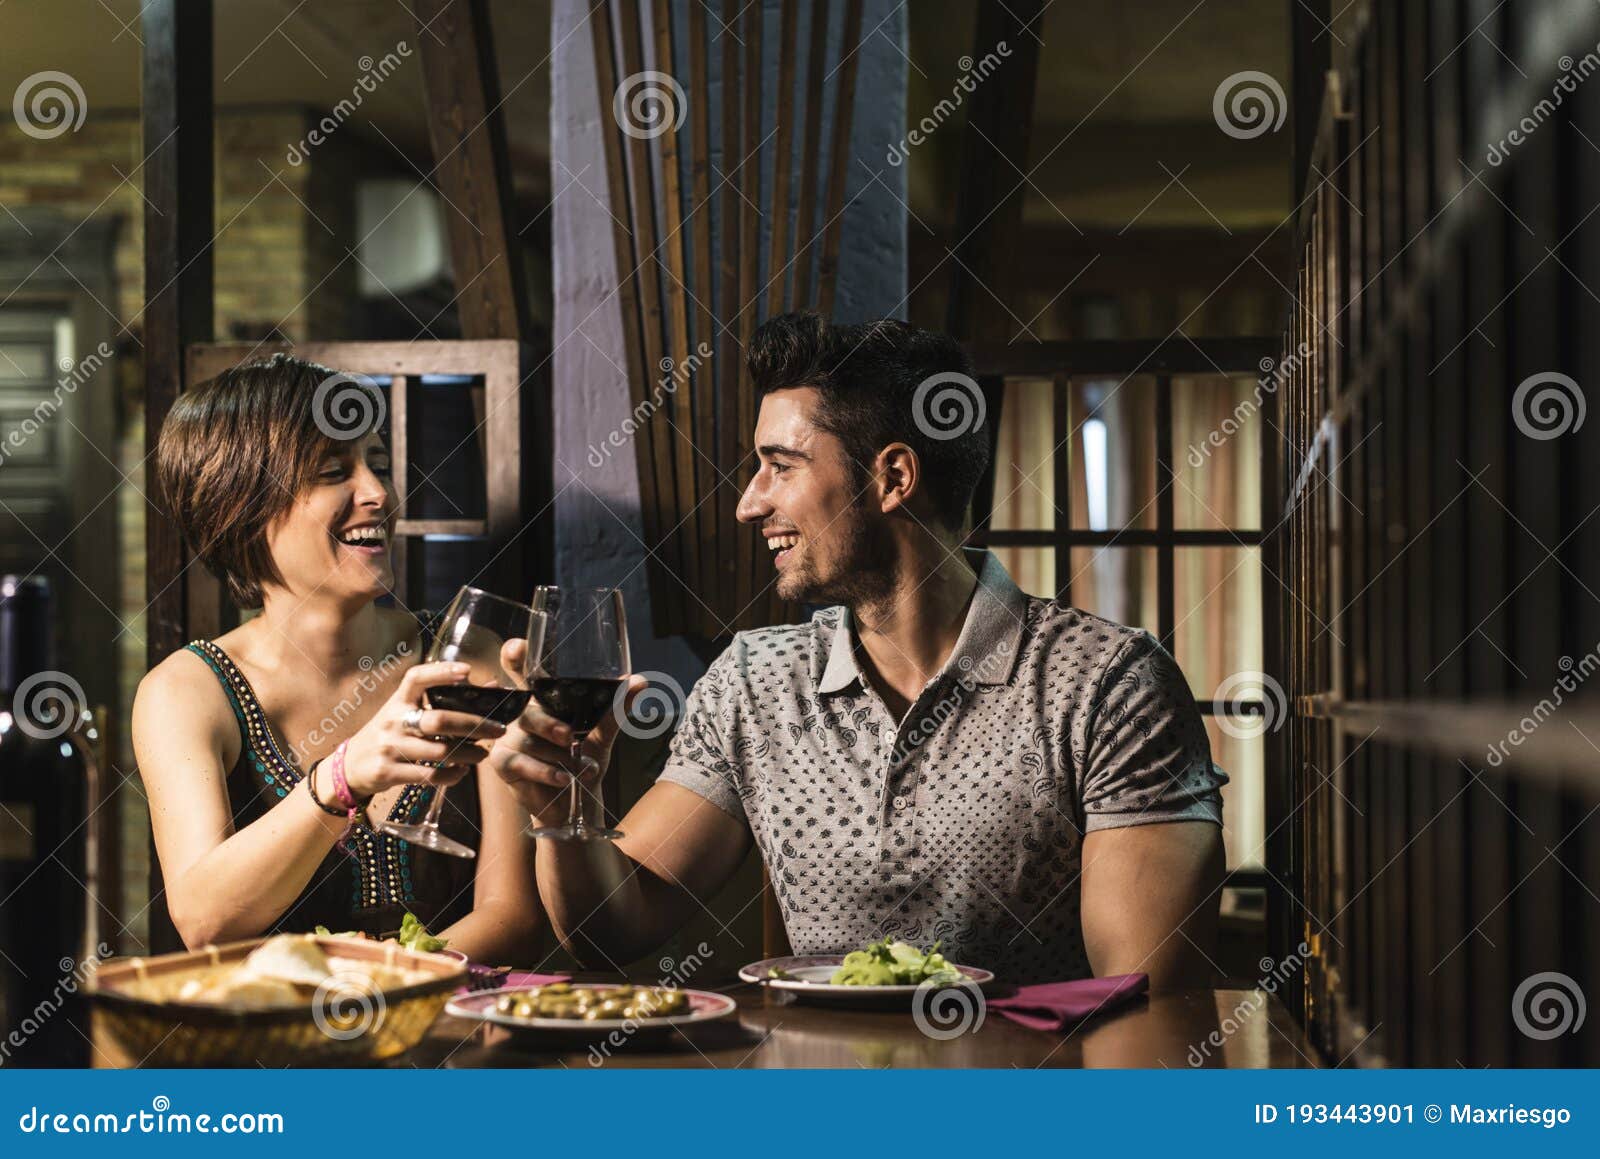 Pareja En El Bar Sonriendo Y Bebiendo Imagen de archivo - Imagen de  sonrisa, hombres: 193443901